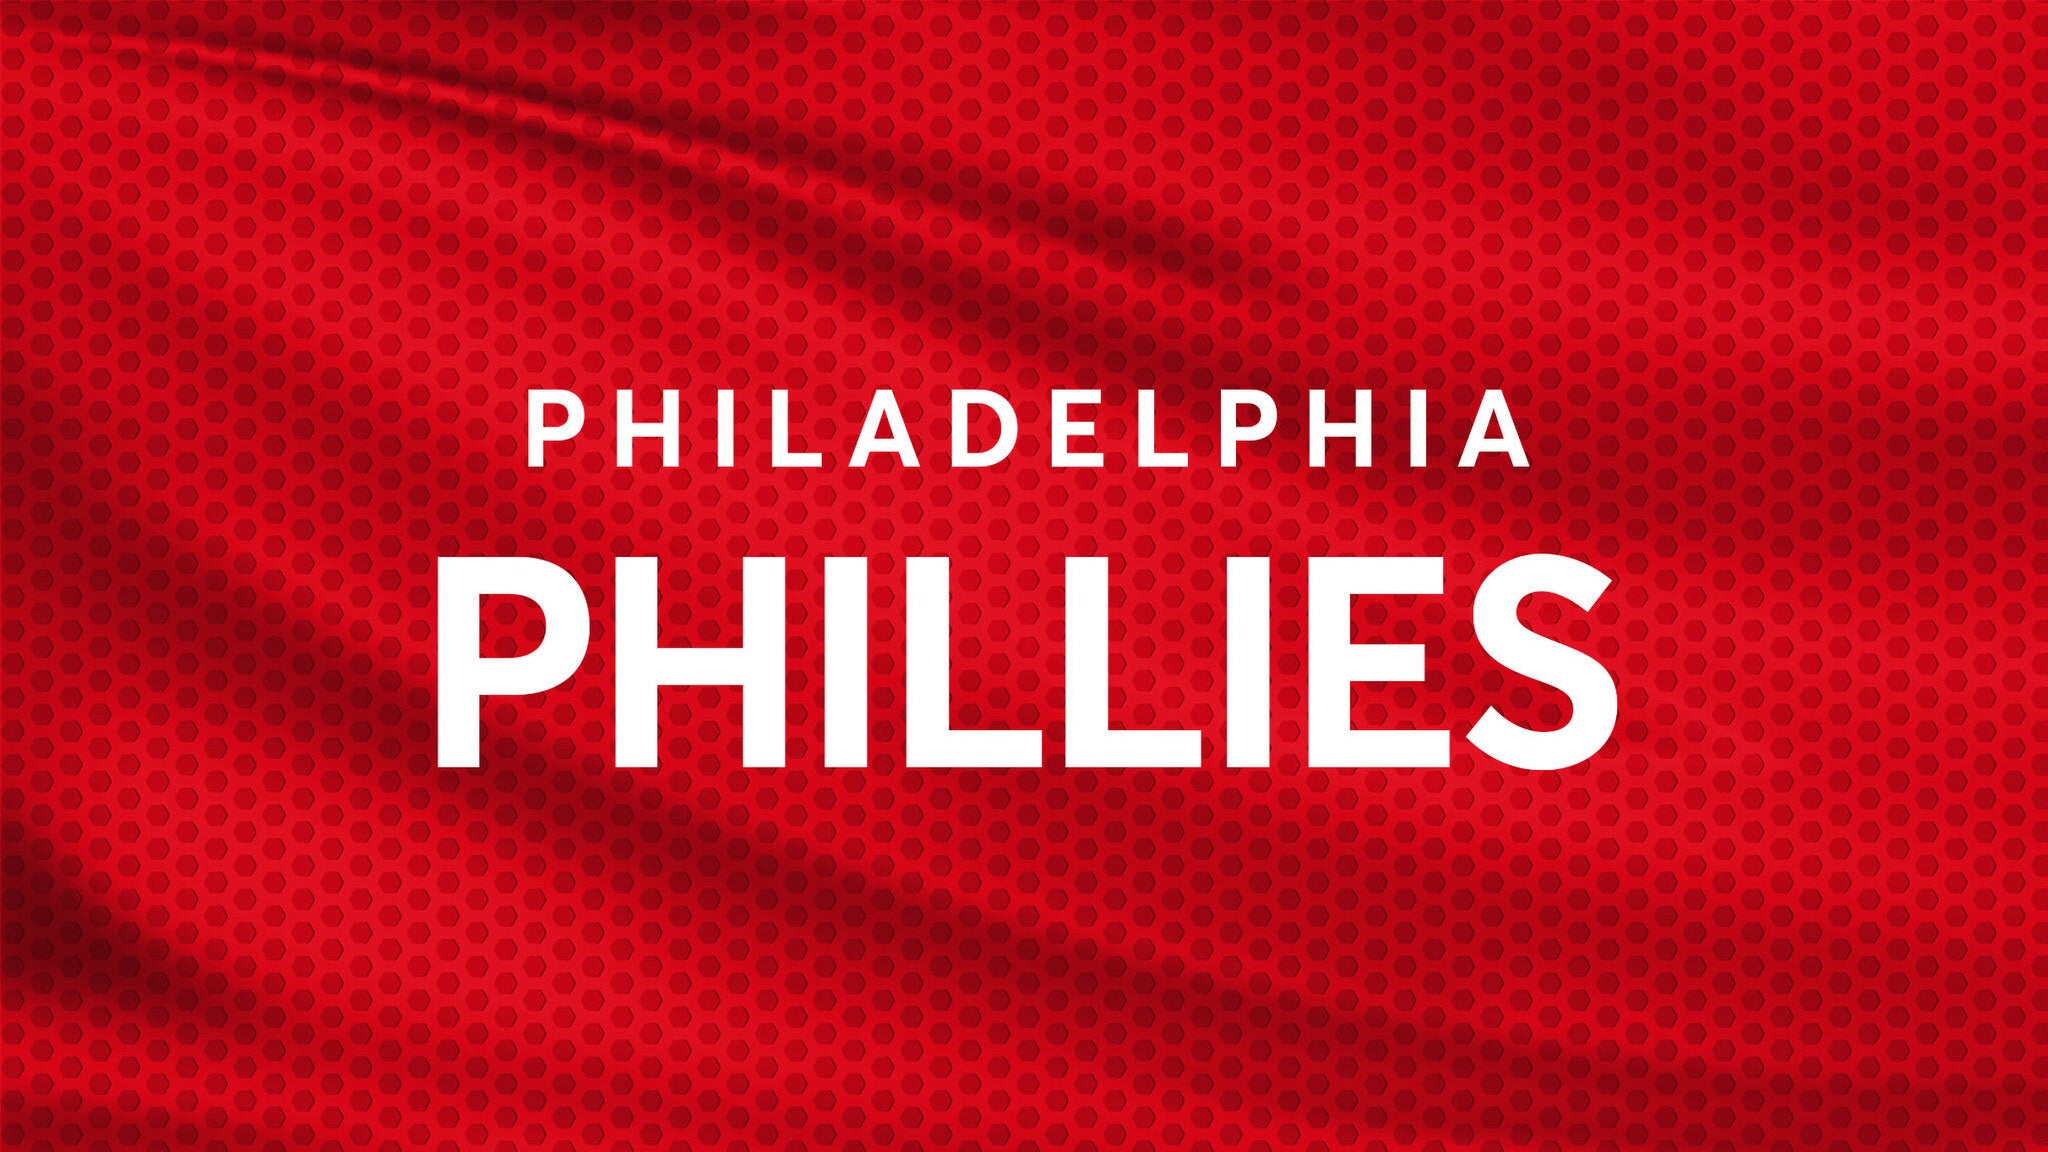 Philadelphia Phillies vs. Arizona Diamondbacks